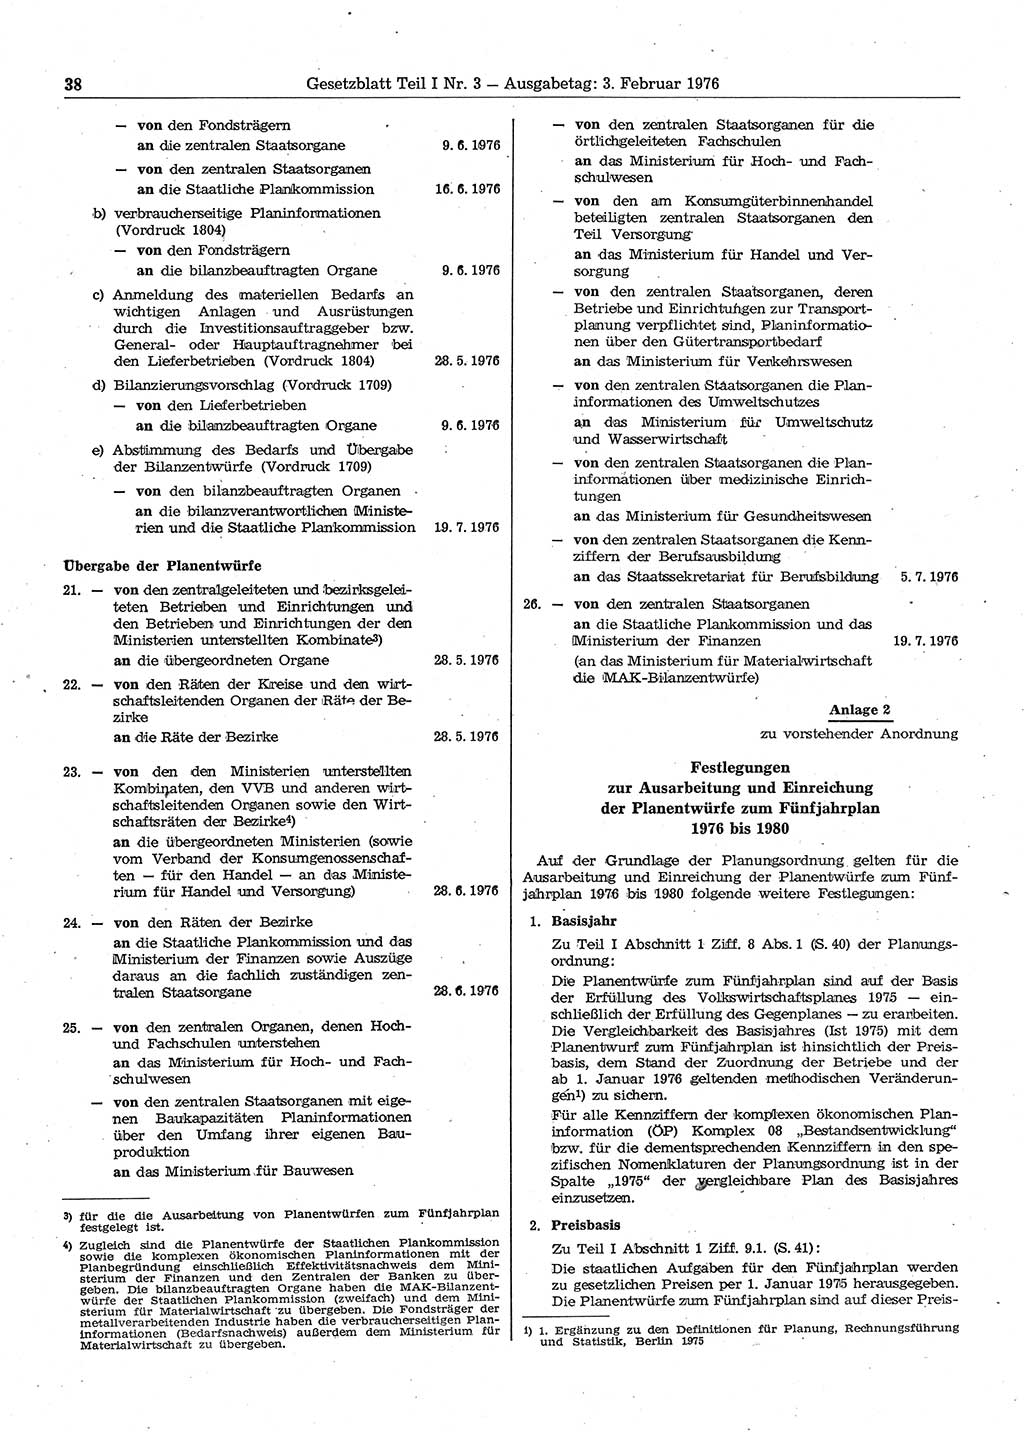 Gesetzblatt (GBl.) der Deutschen Demokratischen Republik (DDR) Teil Ⅰ 1976, Seite 38 (GBl. DDR Ⅰ 1976, S. 38)